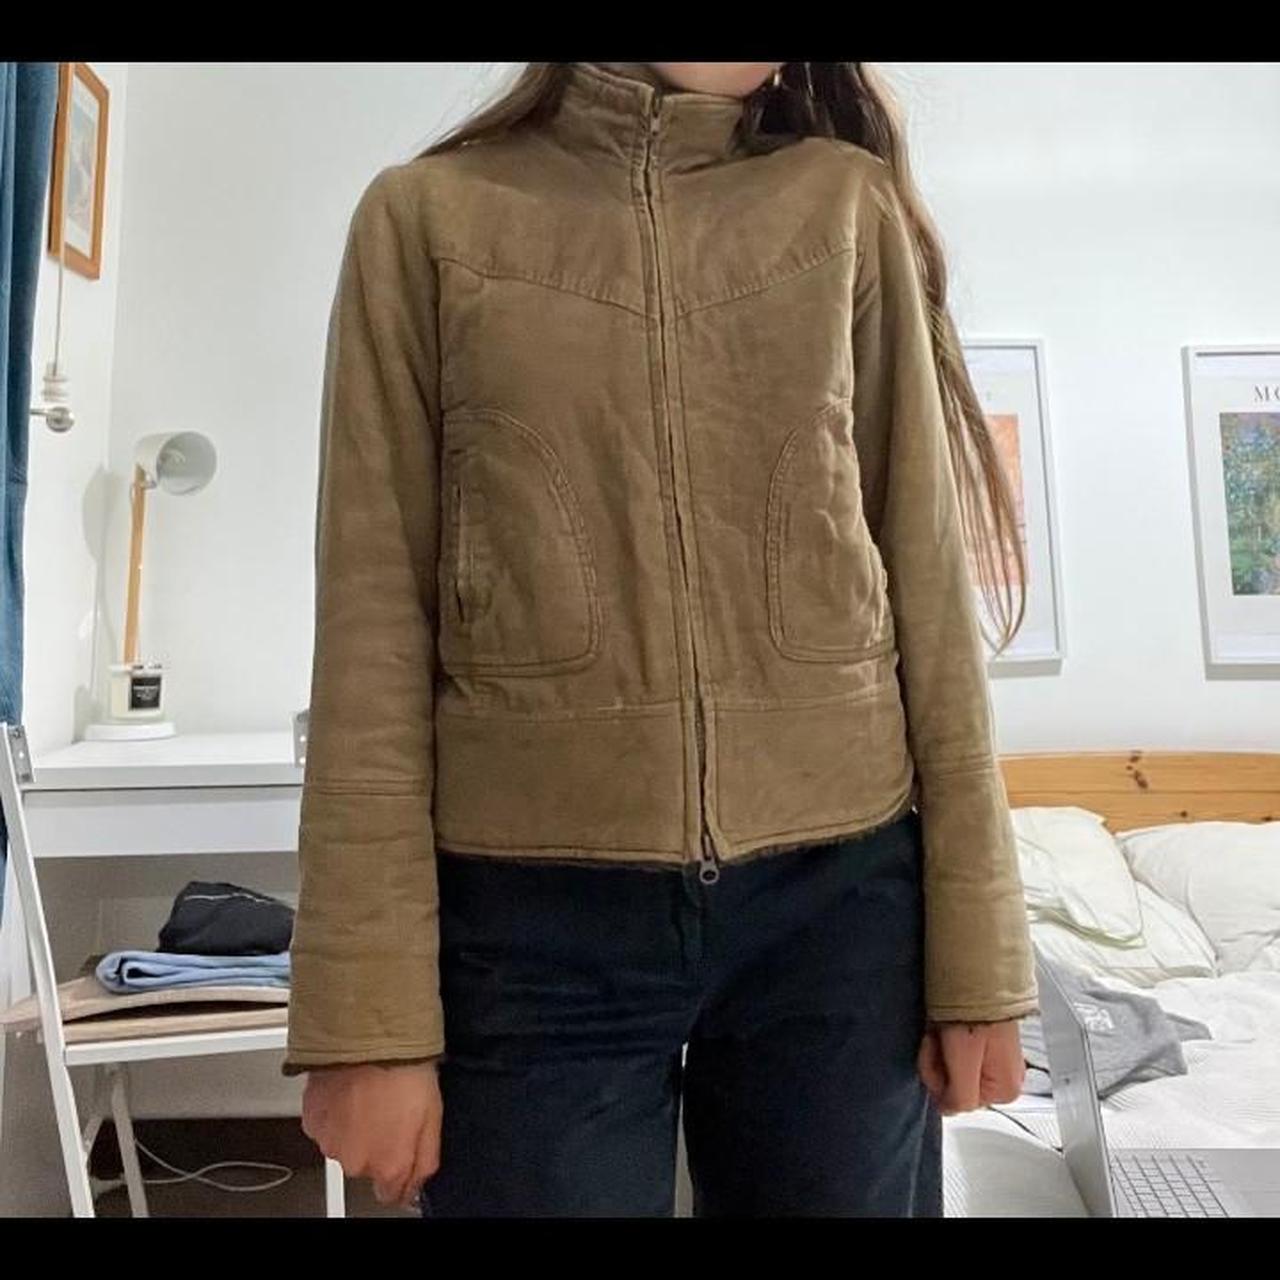 Vintage jajays courd jacket. Best fits a size 6-8.... - Depop